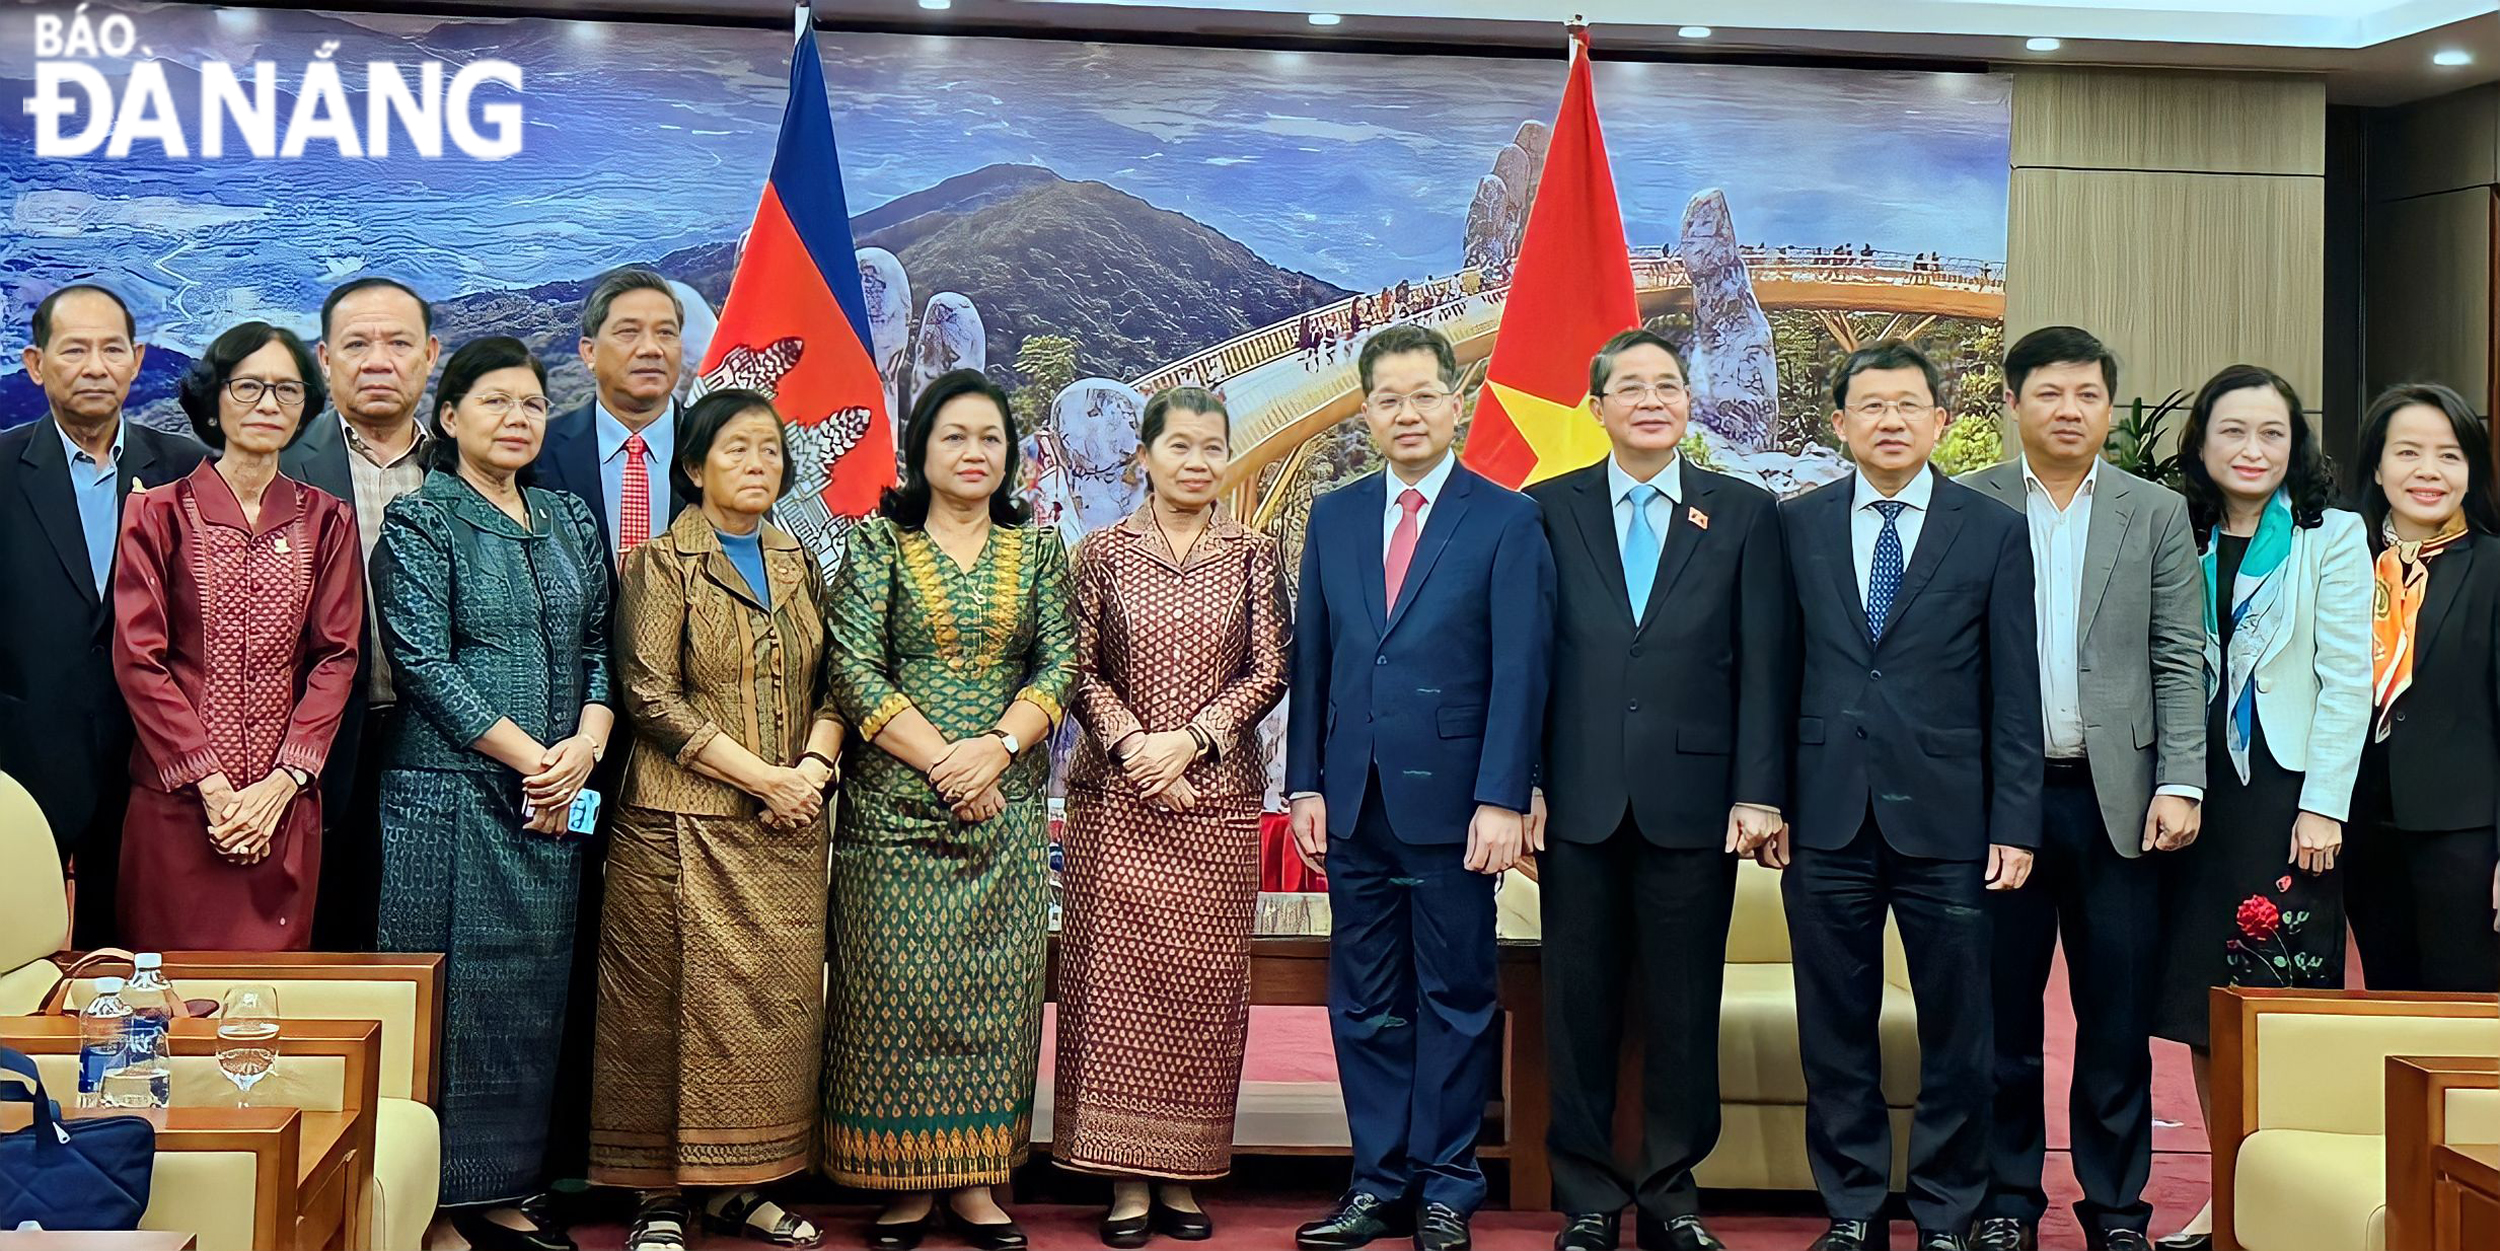 Đoàn đại biểu Quốc hội Việt Nam cùng lãnh đạo thành phố Đà Nẵng chụp ảnh lưu niệm cùng lãnh đạo Quốc hội Campuchia. Ảnh PV